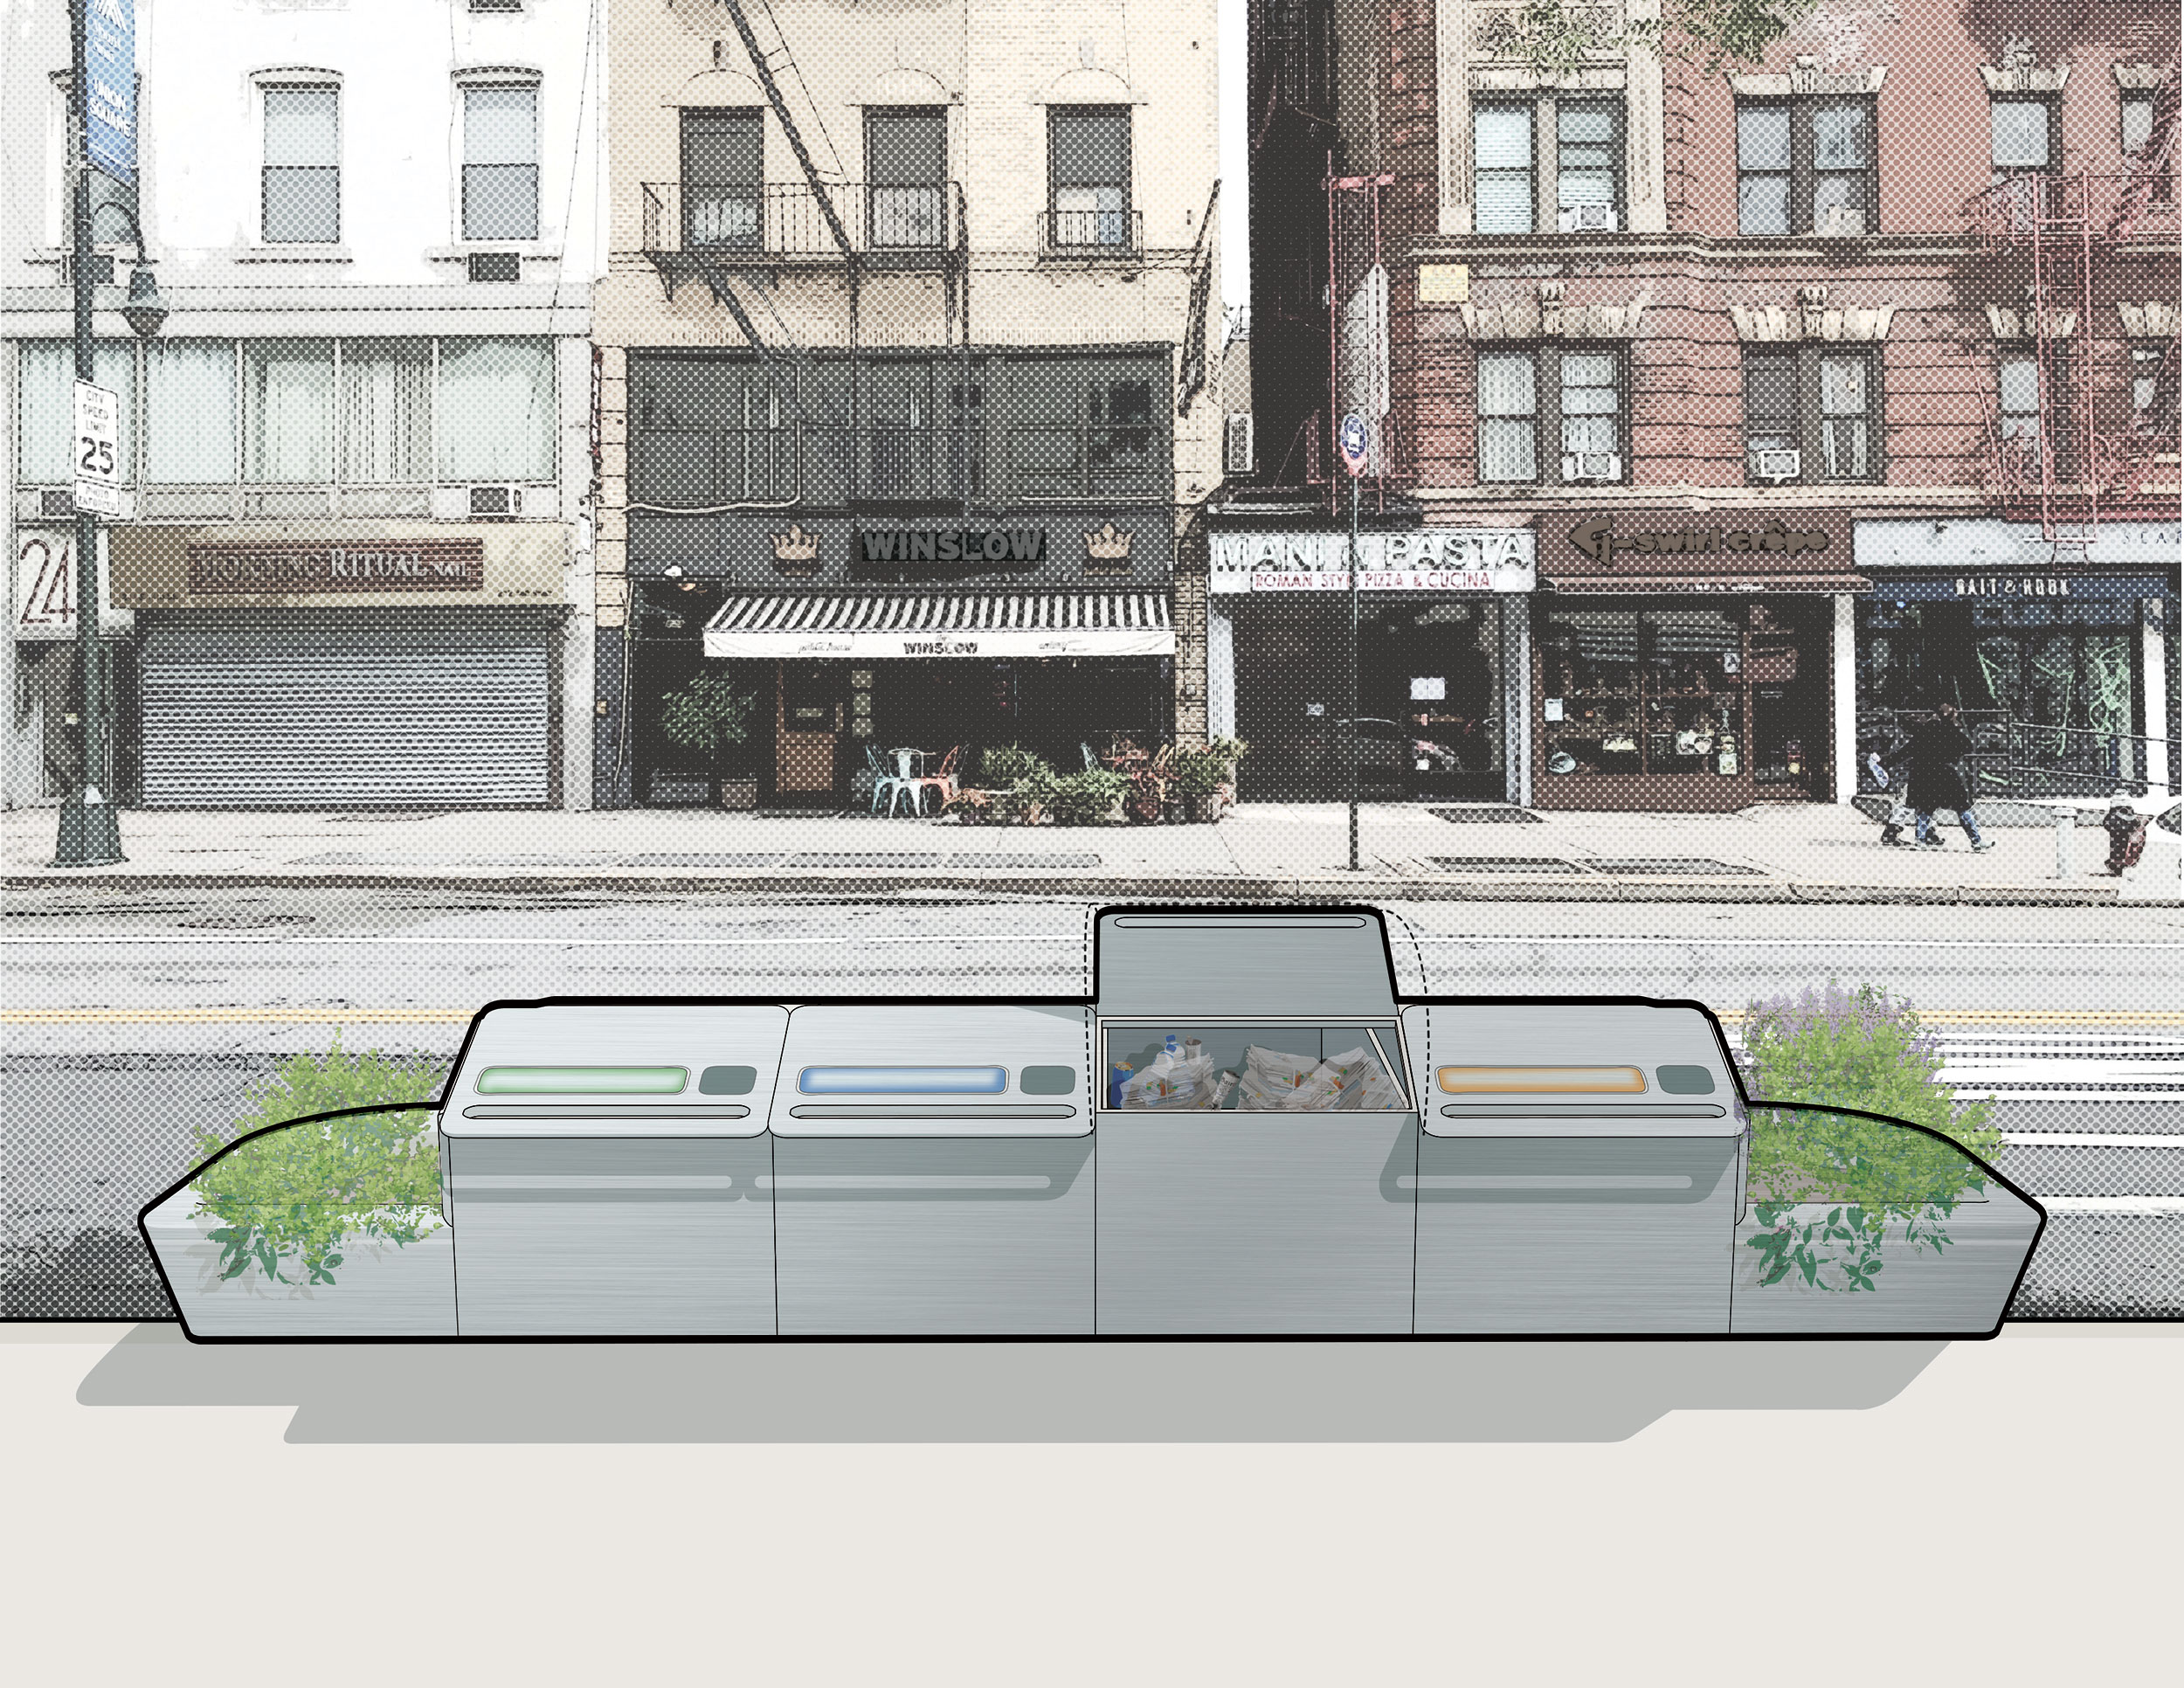 Containerized Waste DaRT. Architect, Landscape Architect: Marvel. Location: New York, NY. Image: Marvel.